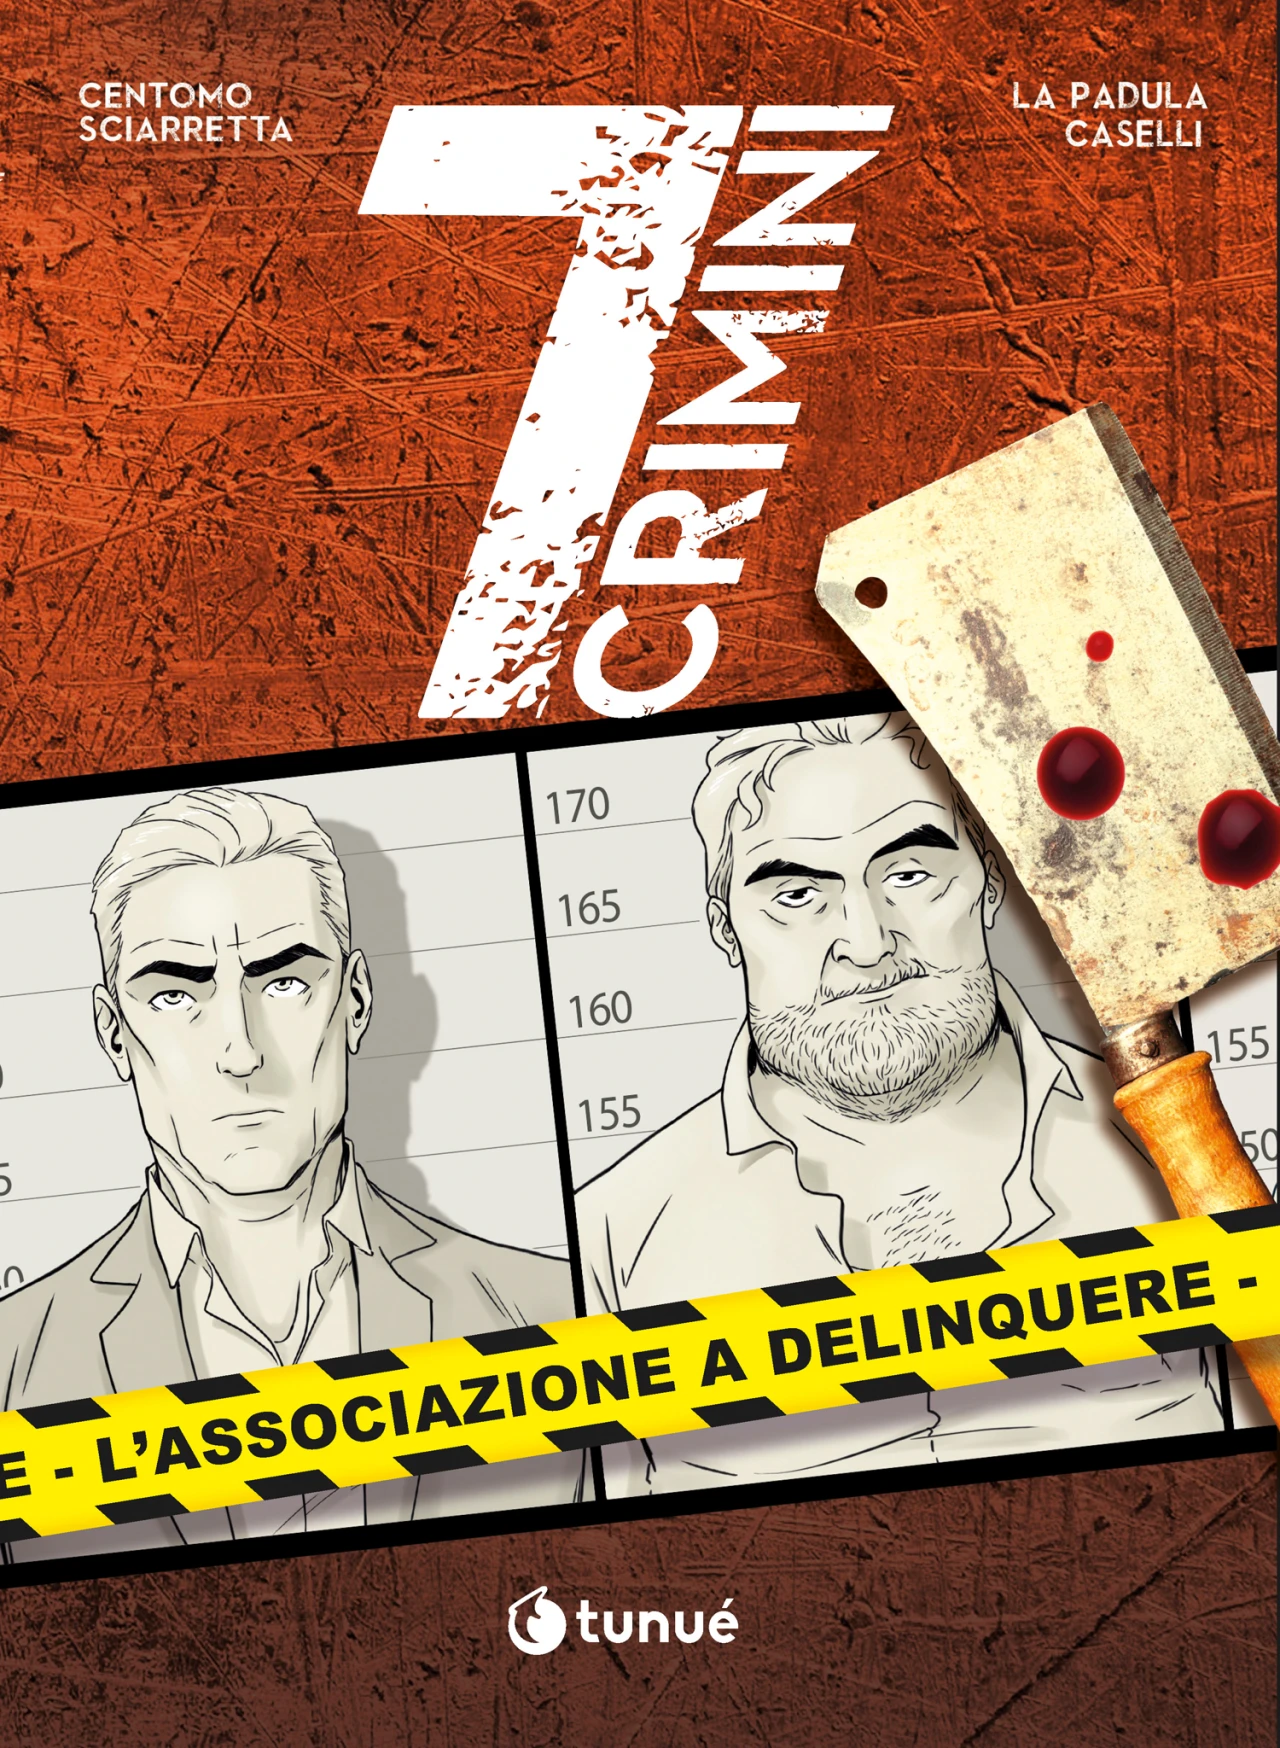 bcbf23-comics-siarretta-caselli-7crimini_associazione_a_delinquere.jpg